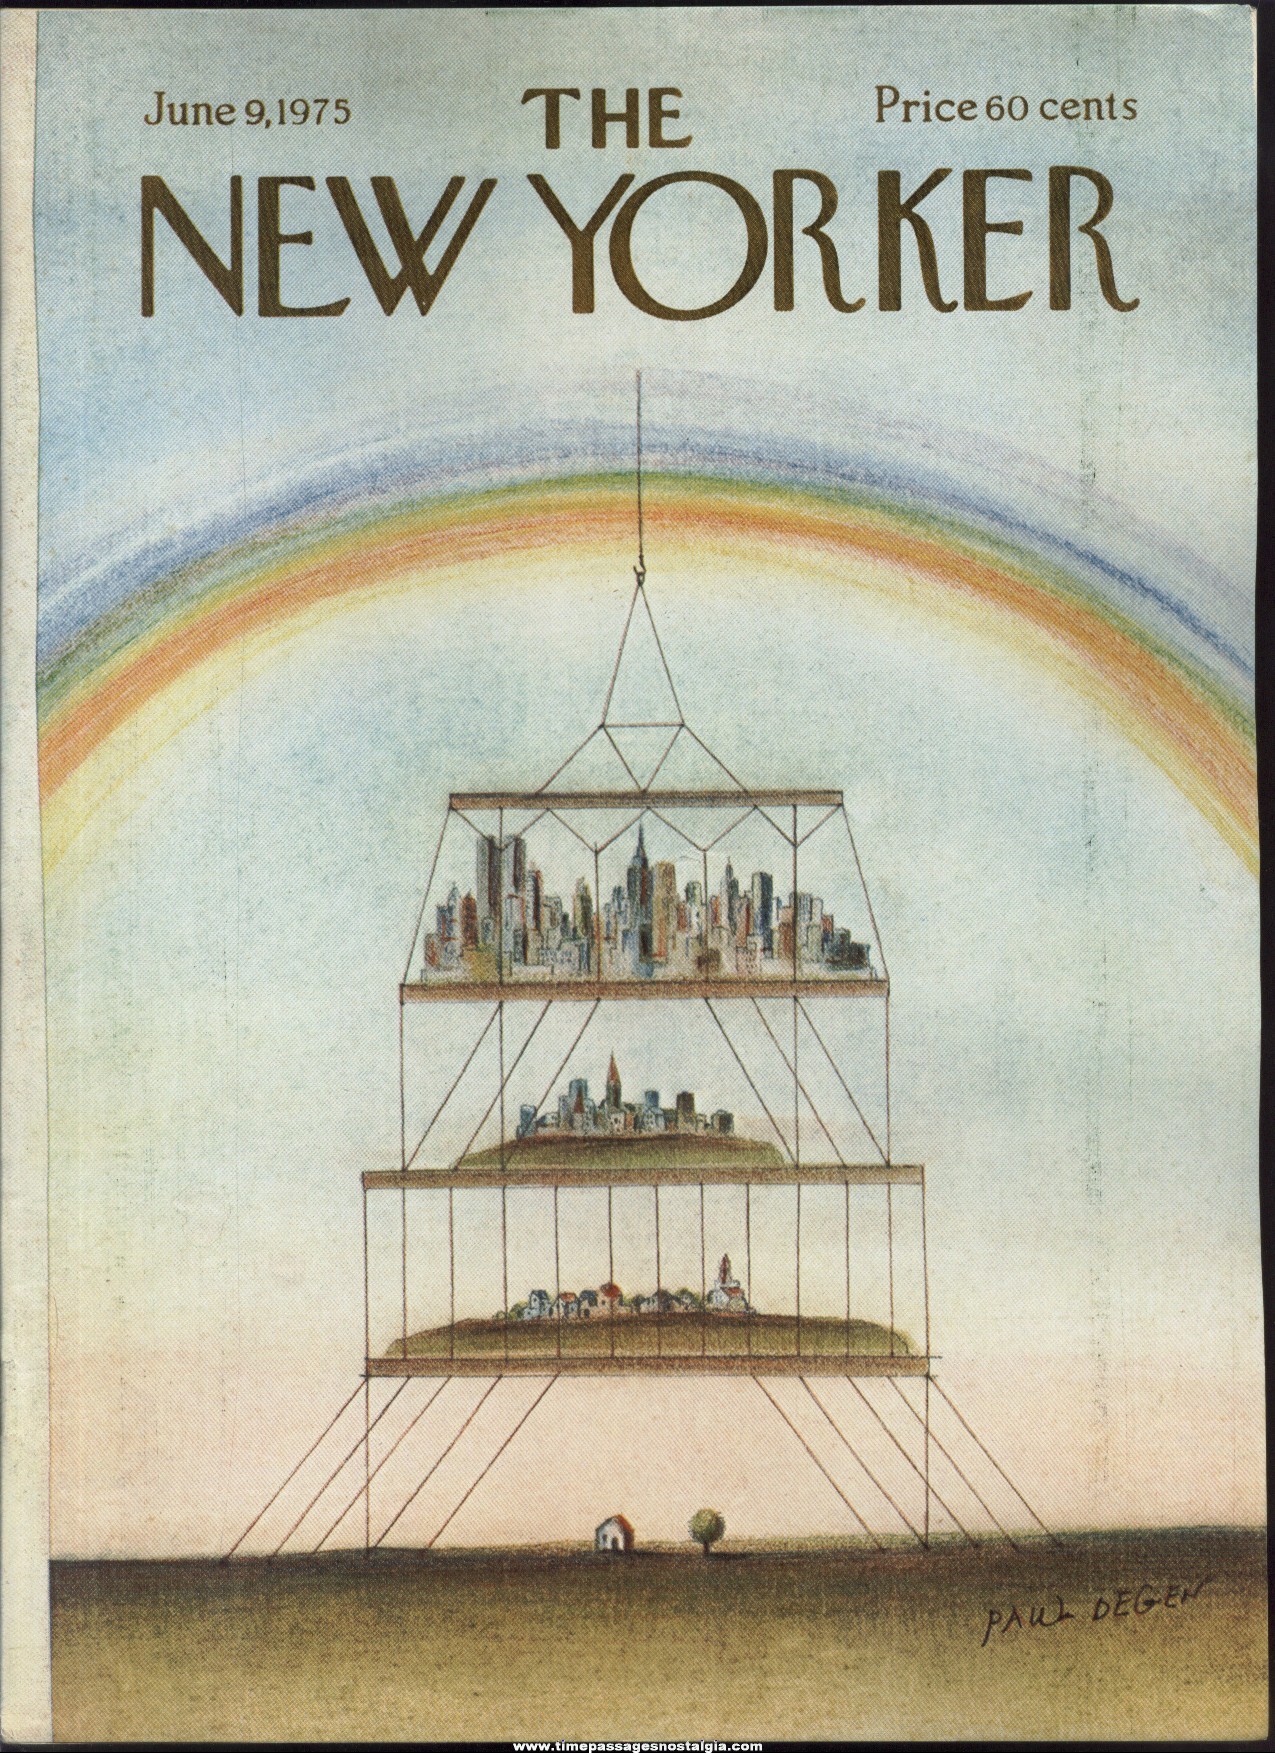 New Yorker Magazine - June 9, 1975 - Cover by Paul Degen